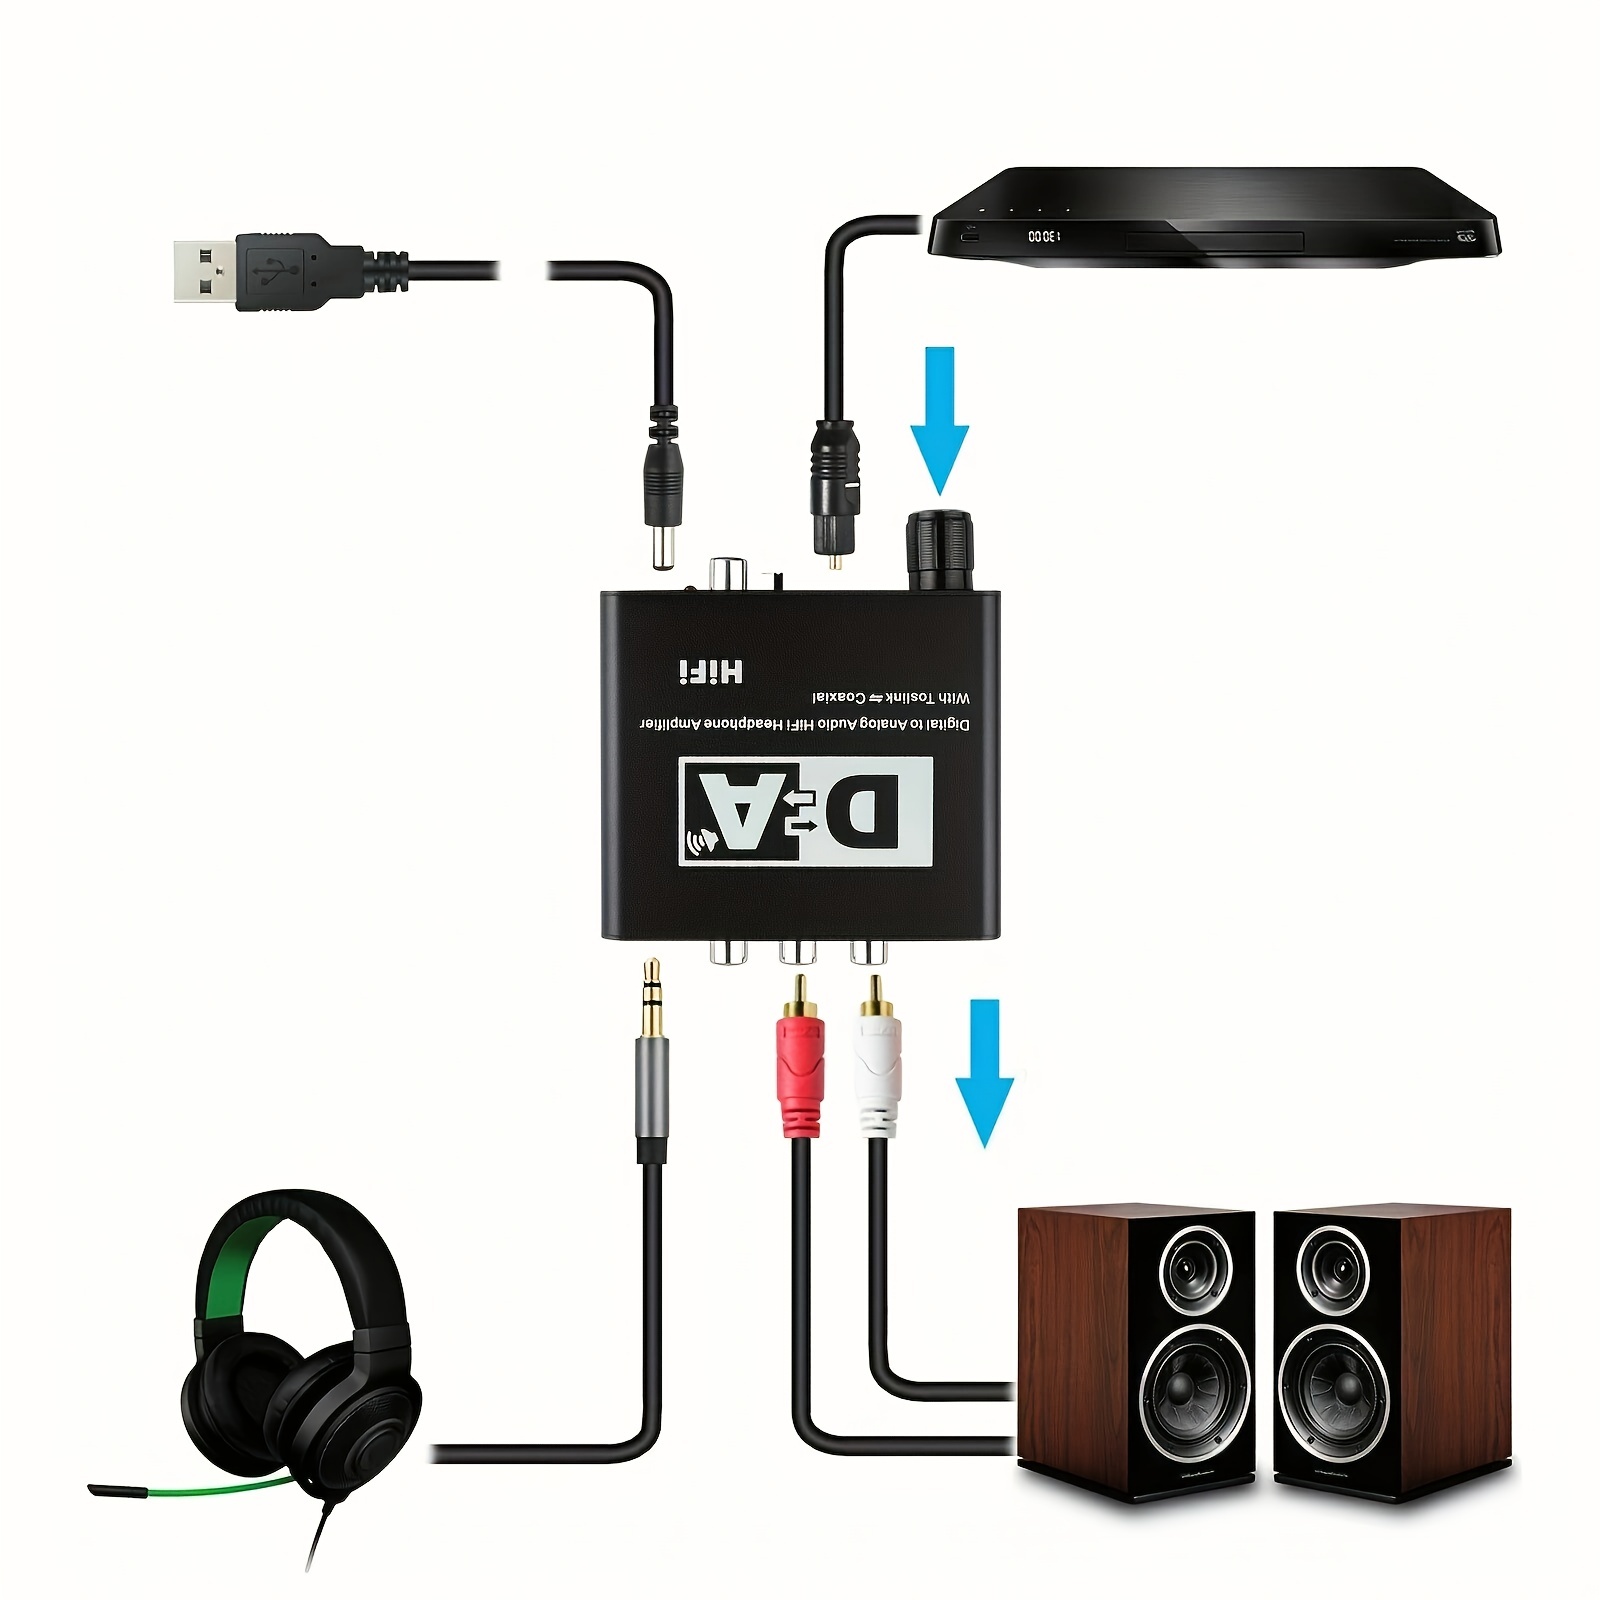 Convertisseur audio numérique vers analogique Convertisseur optique coaxial  SPDIF vers audio analogique R/L RCA et prise jack 3,5 mm Adaptateur audio  stéréo AUX pour PS3, PS4, TV, Xbox 